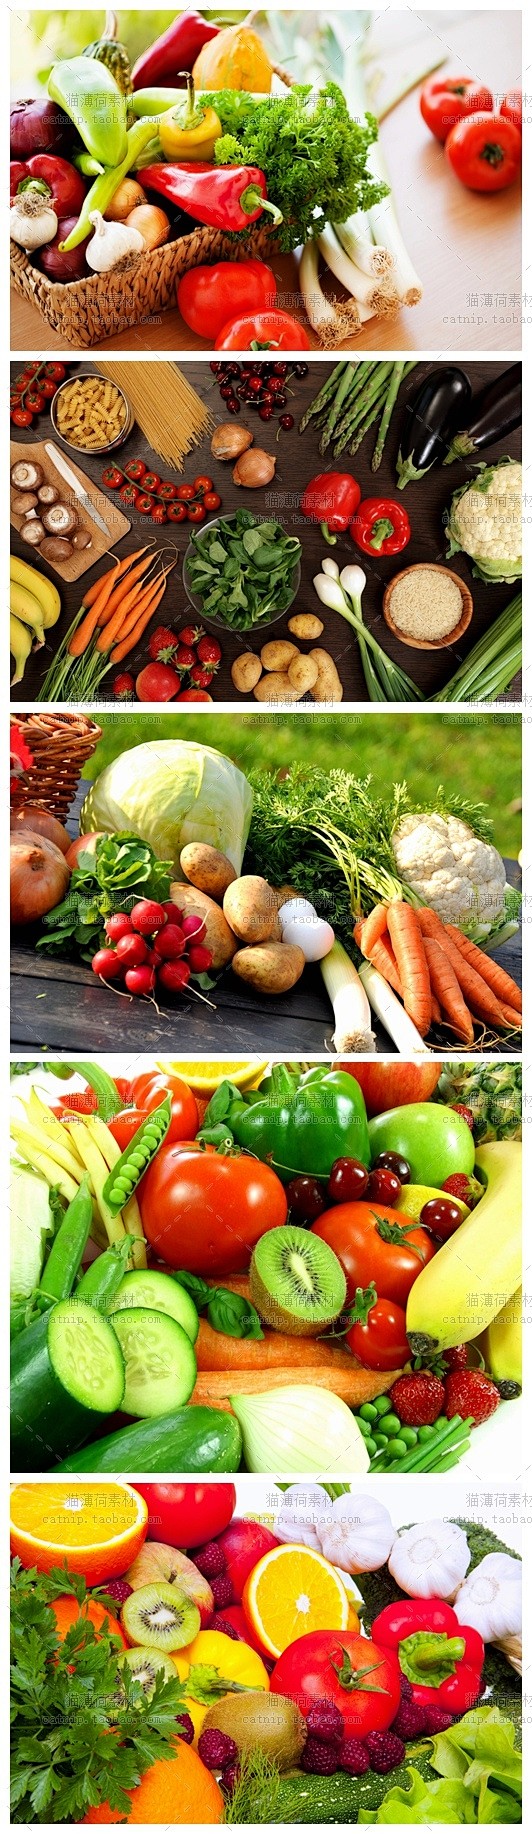 [gq111]47张蔬菜水果沙拉美食健康...